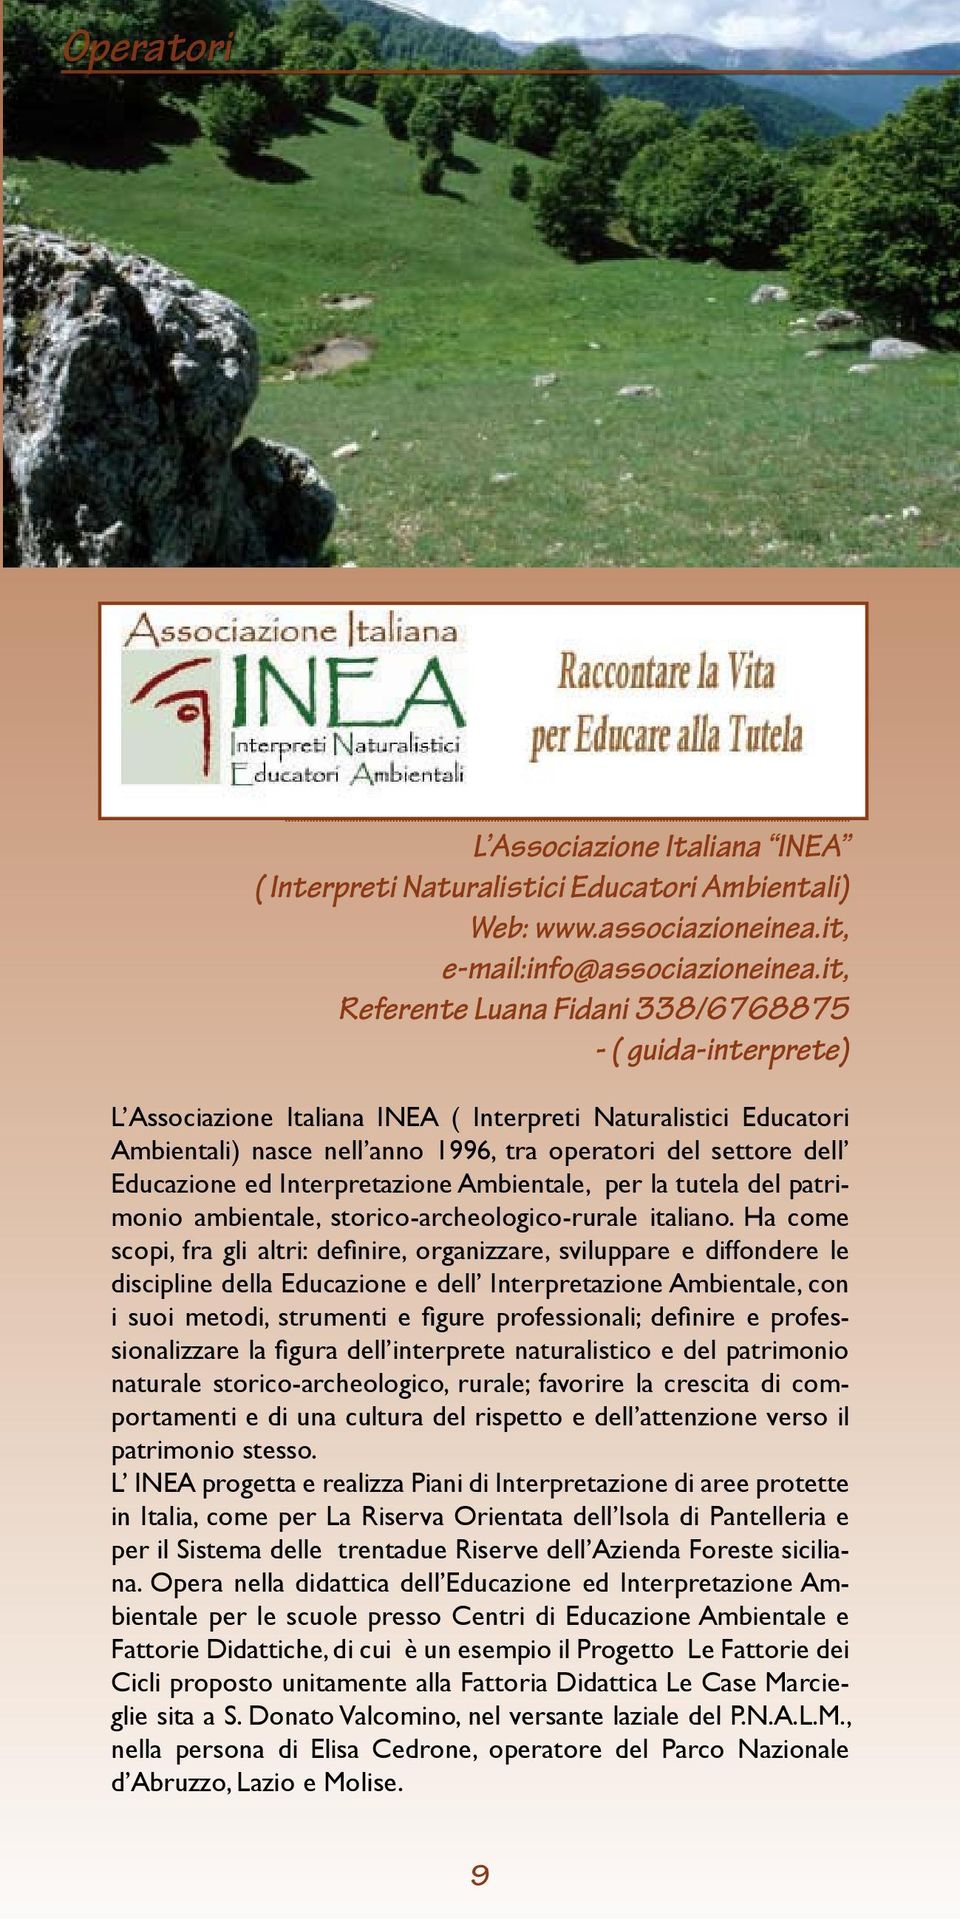 Educazione ed Interpretazione Ambientale, per la tutela del patrimonio ambientale, storico-archeologico-rurale italiano.